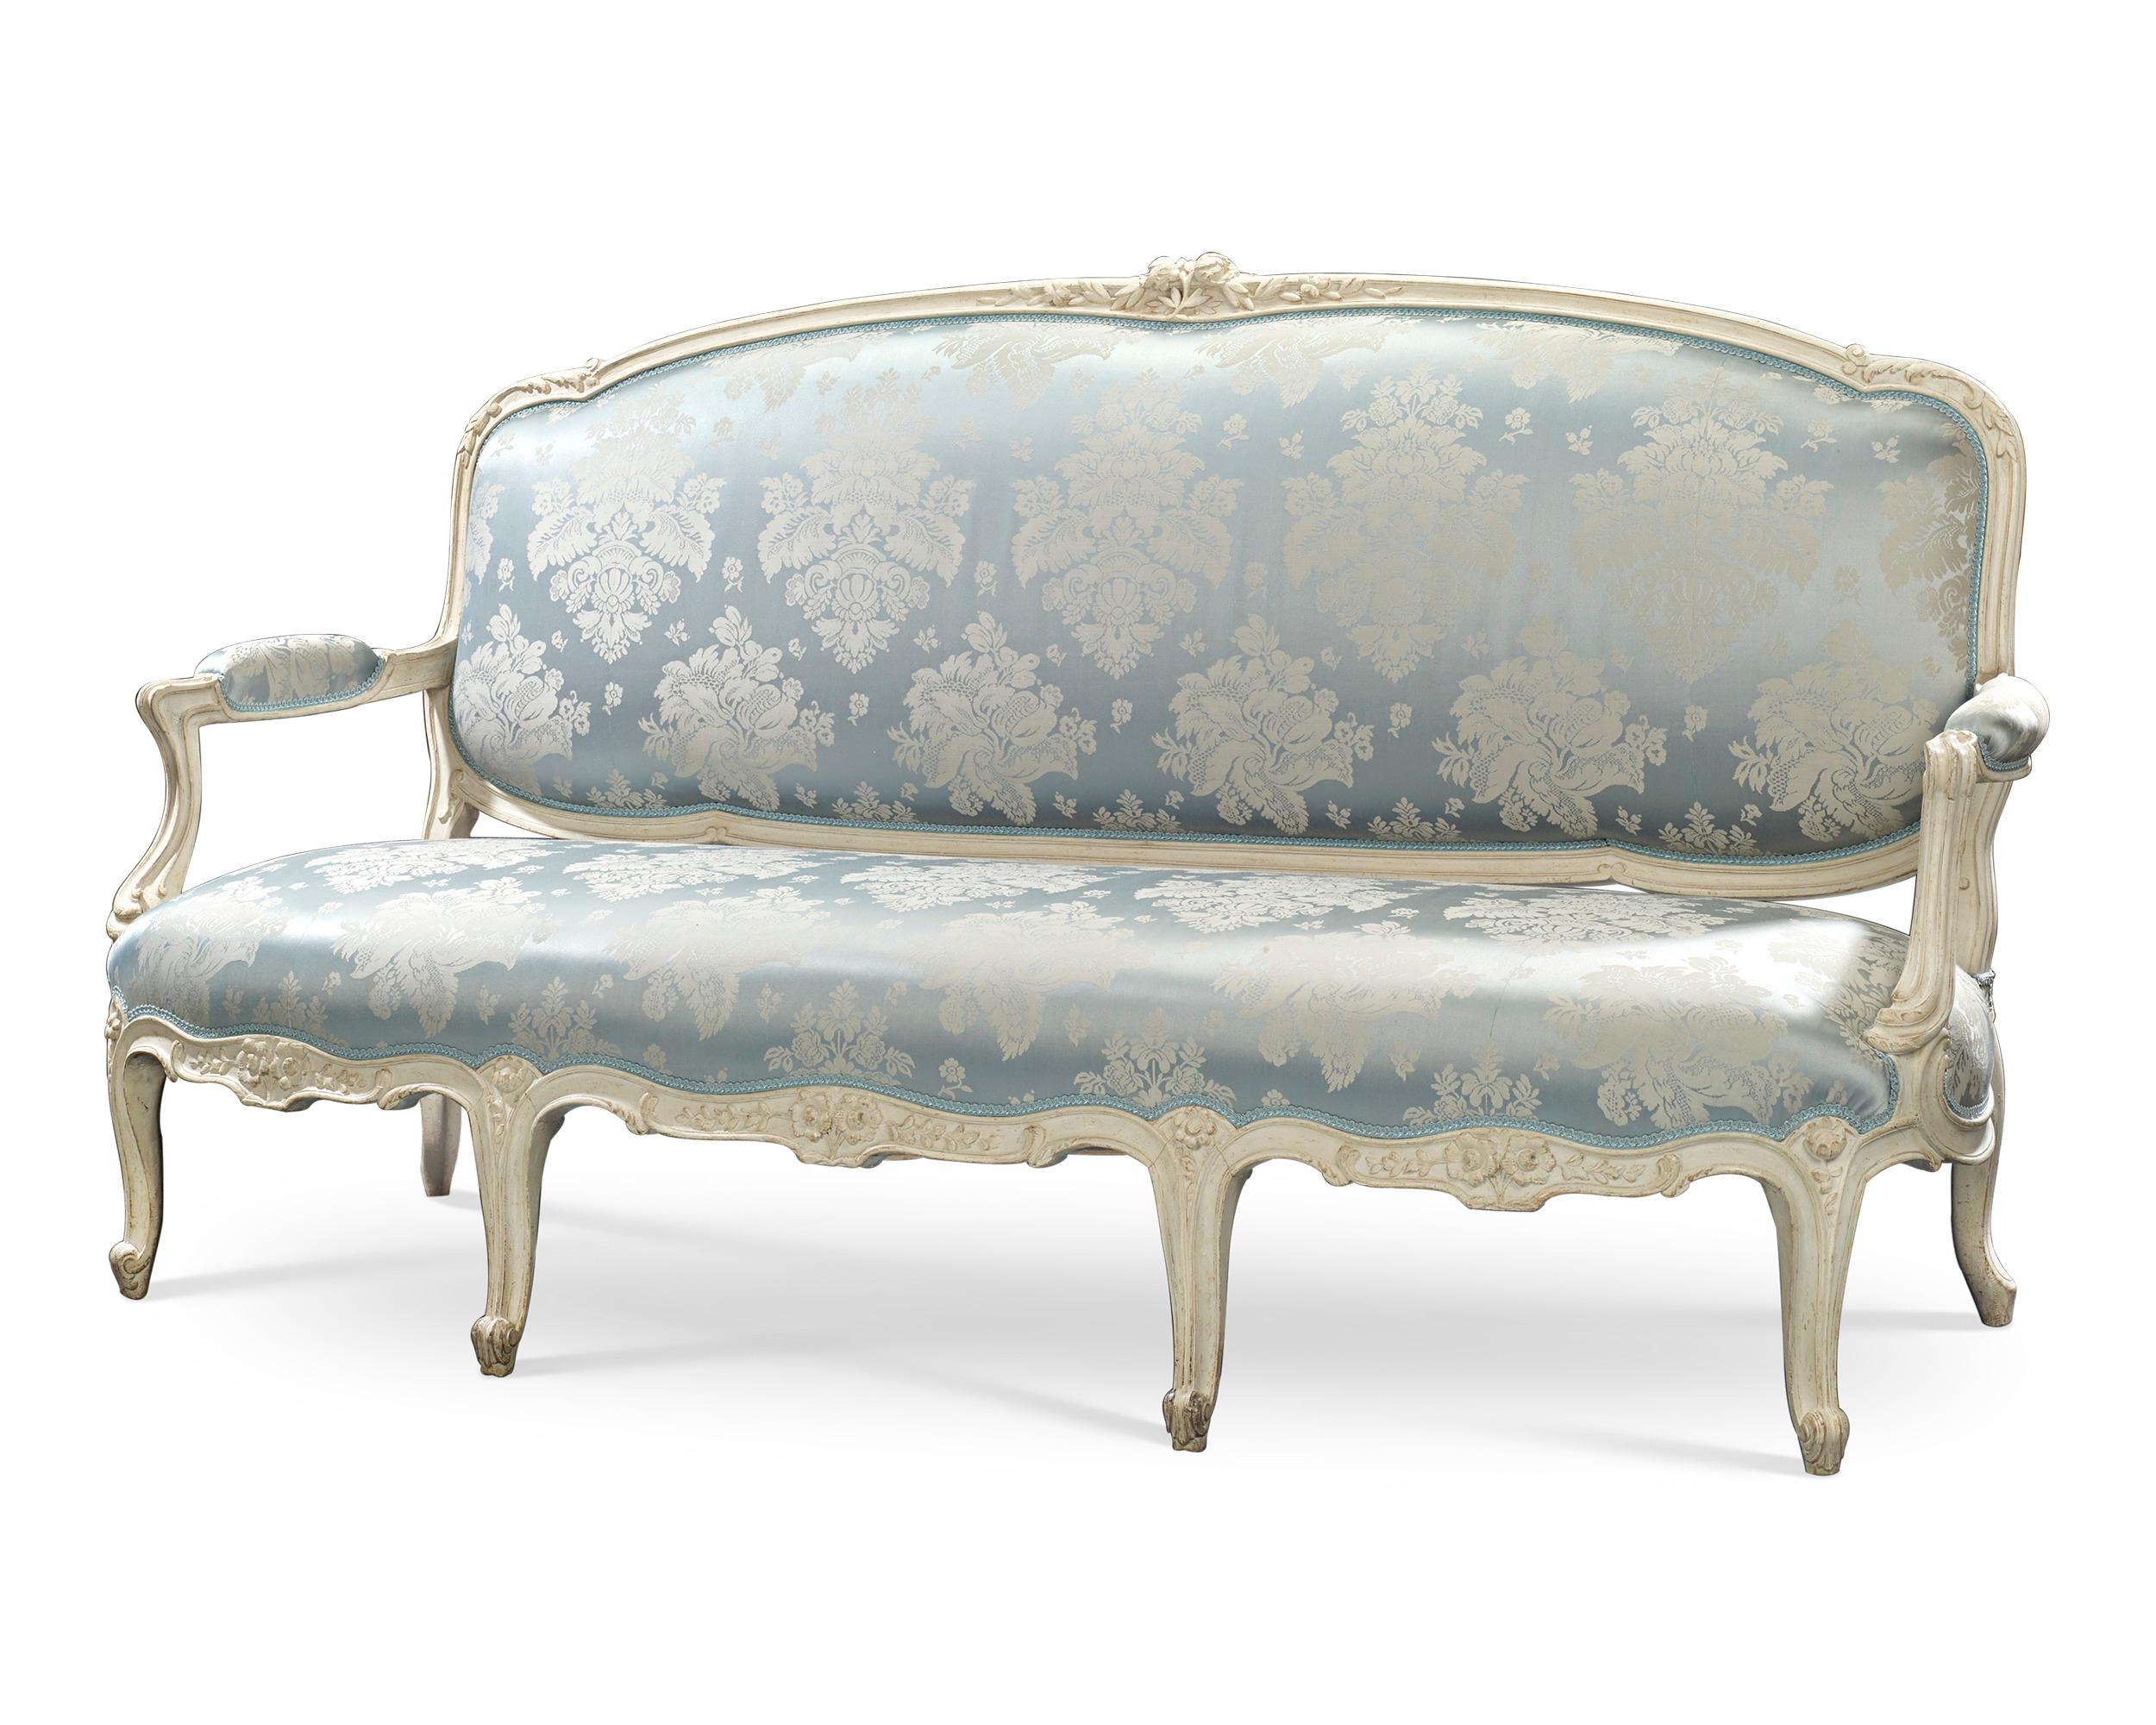 La splendeur de la période Louis XV est capturée dans cet incroyable canapé du célèbre ébéniste Jean-René Nadal l'Ainé (1733-1783). Magnifiquement tapissé d'un tissu bleu et blanc qui complète le blanc du bois, ce rare canapé reflète le changement